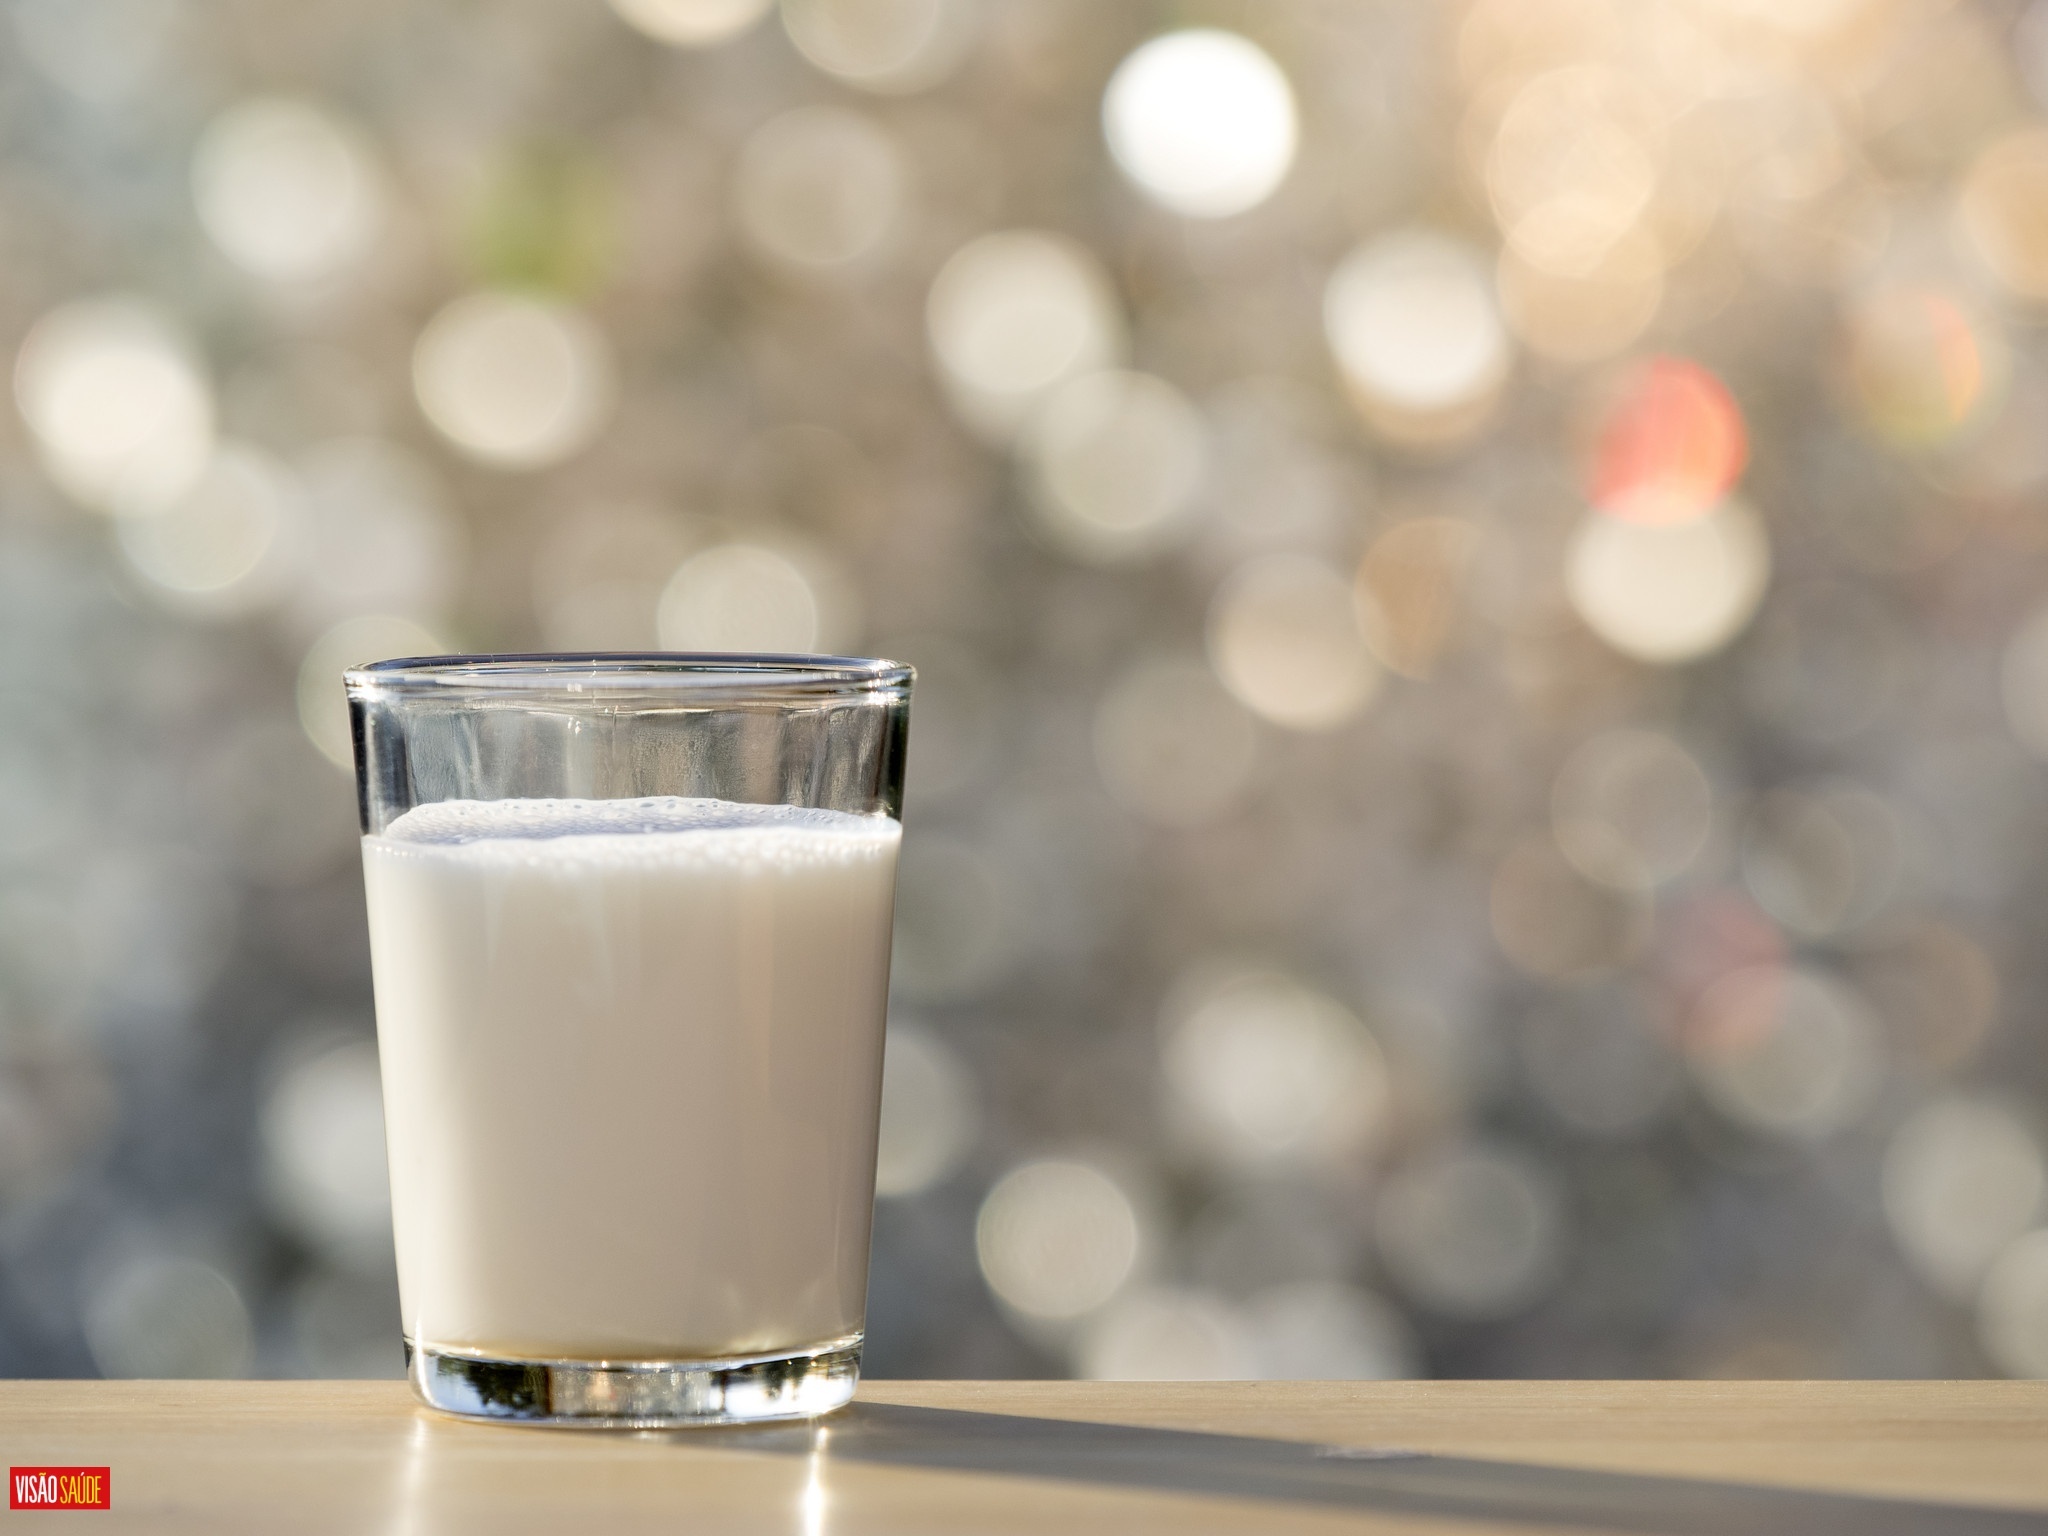 Vaca transgénica produz leite com insulina humana. Vem aí uma revolução no acesso à proteína essencial para combater a diabetes?